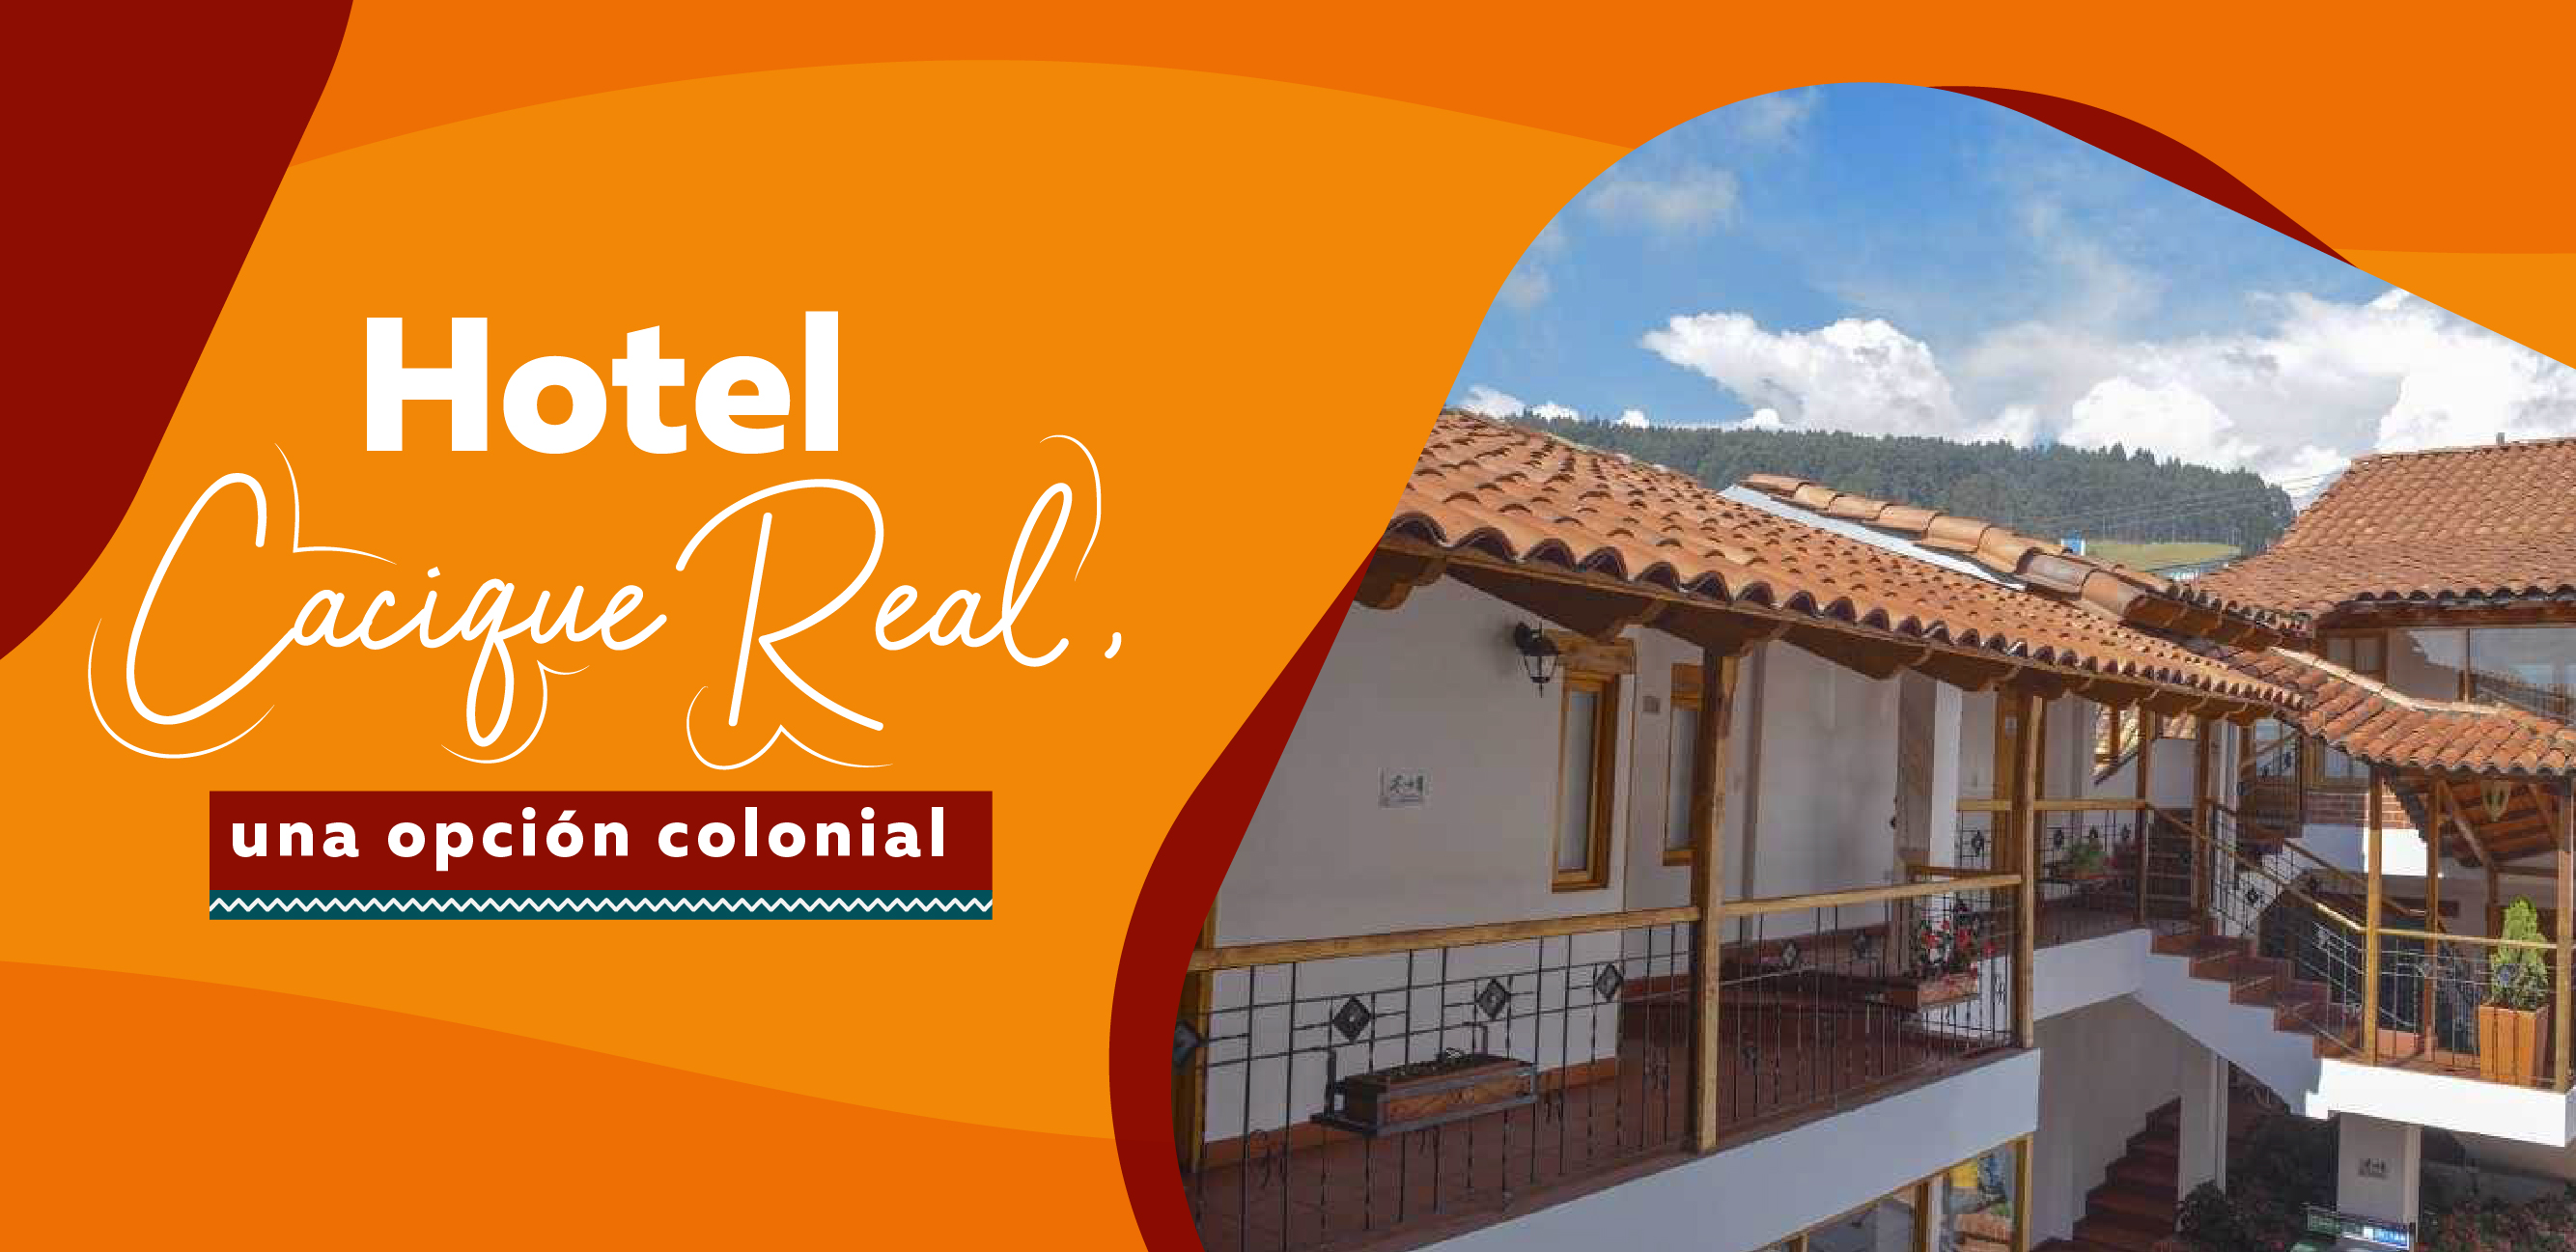 Un Viaje al Pasado en Zipaquirá: Descubre el Encanto Colonial del Hotel Cacique Real